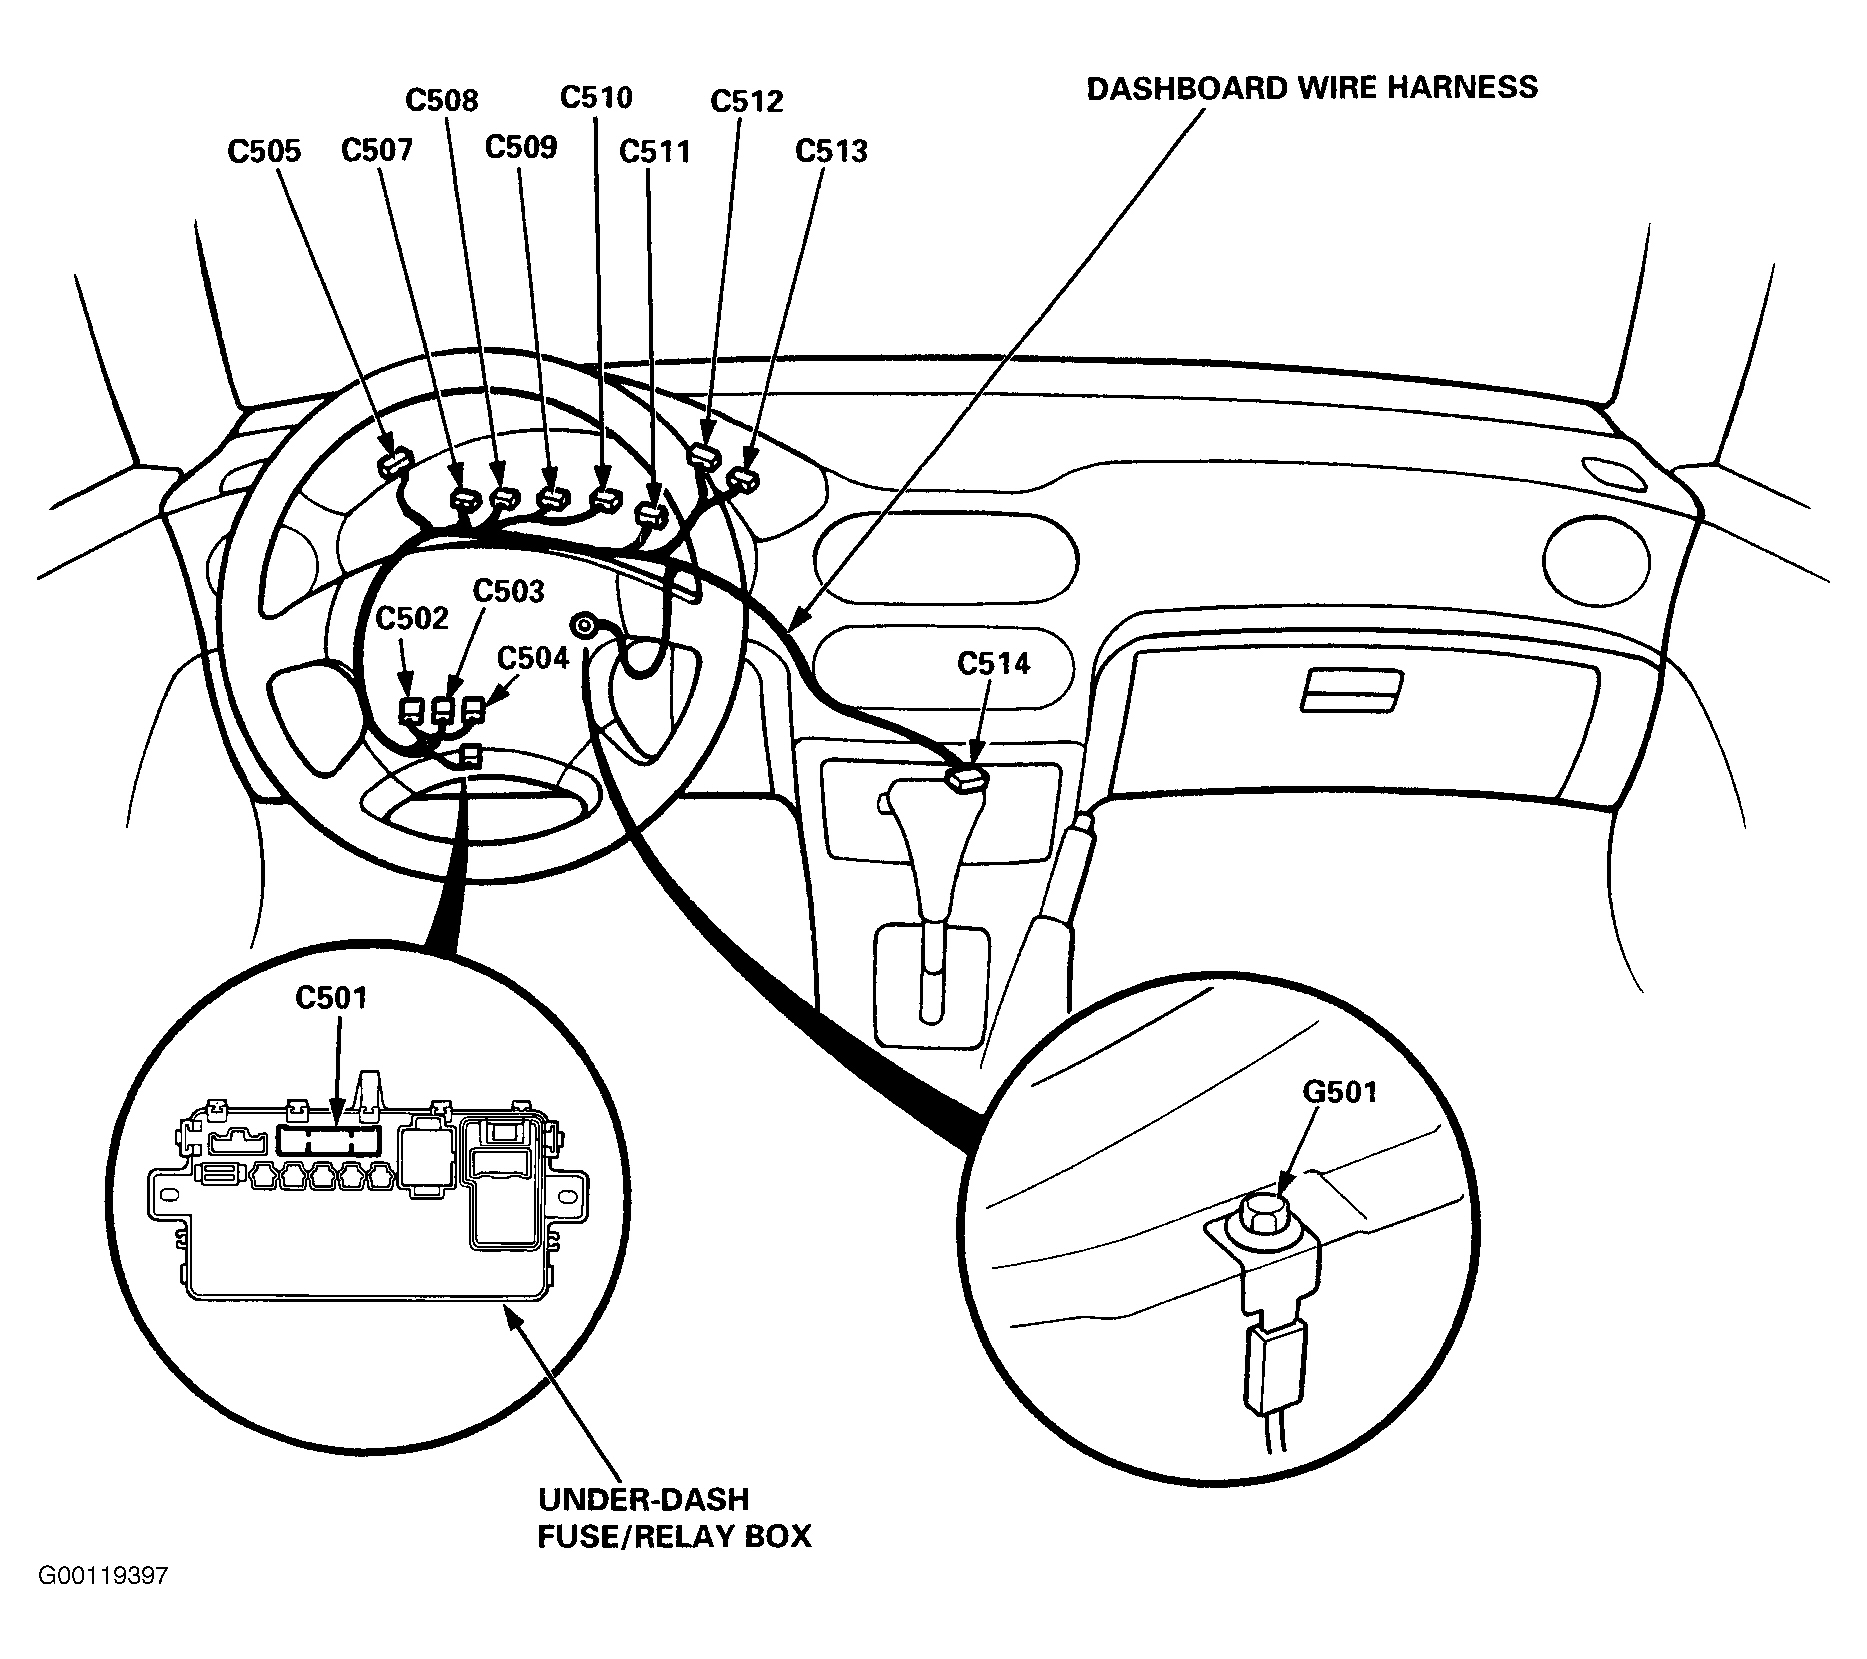 Honda Civic del Sol VTEC 1996 - Component Locations -  Locating Under-Dash Fuse/Relay Box